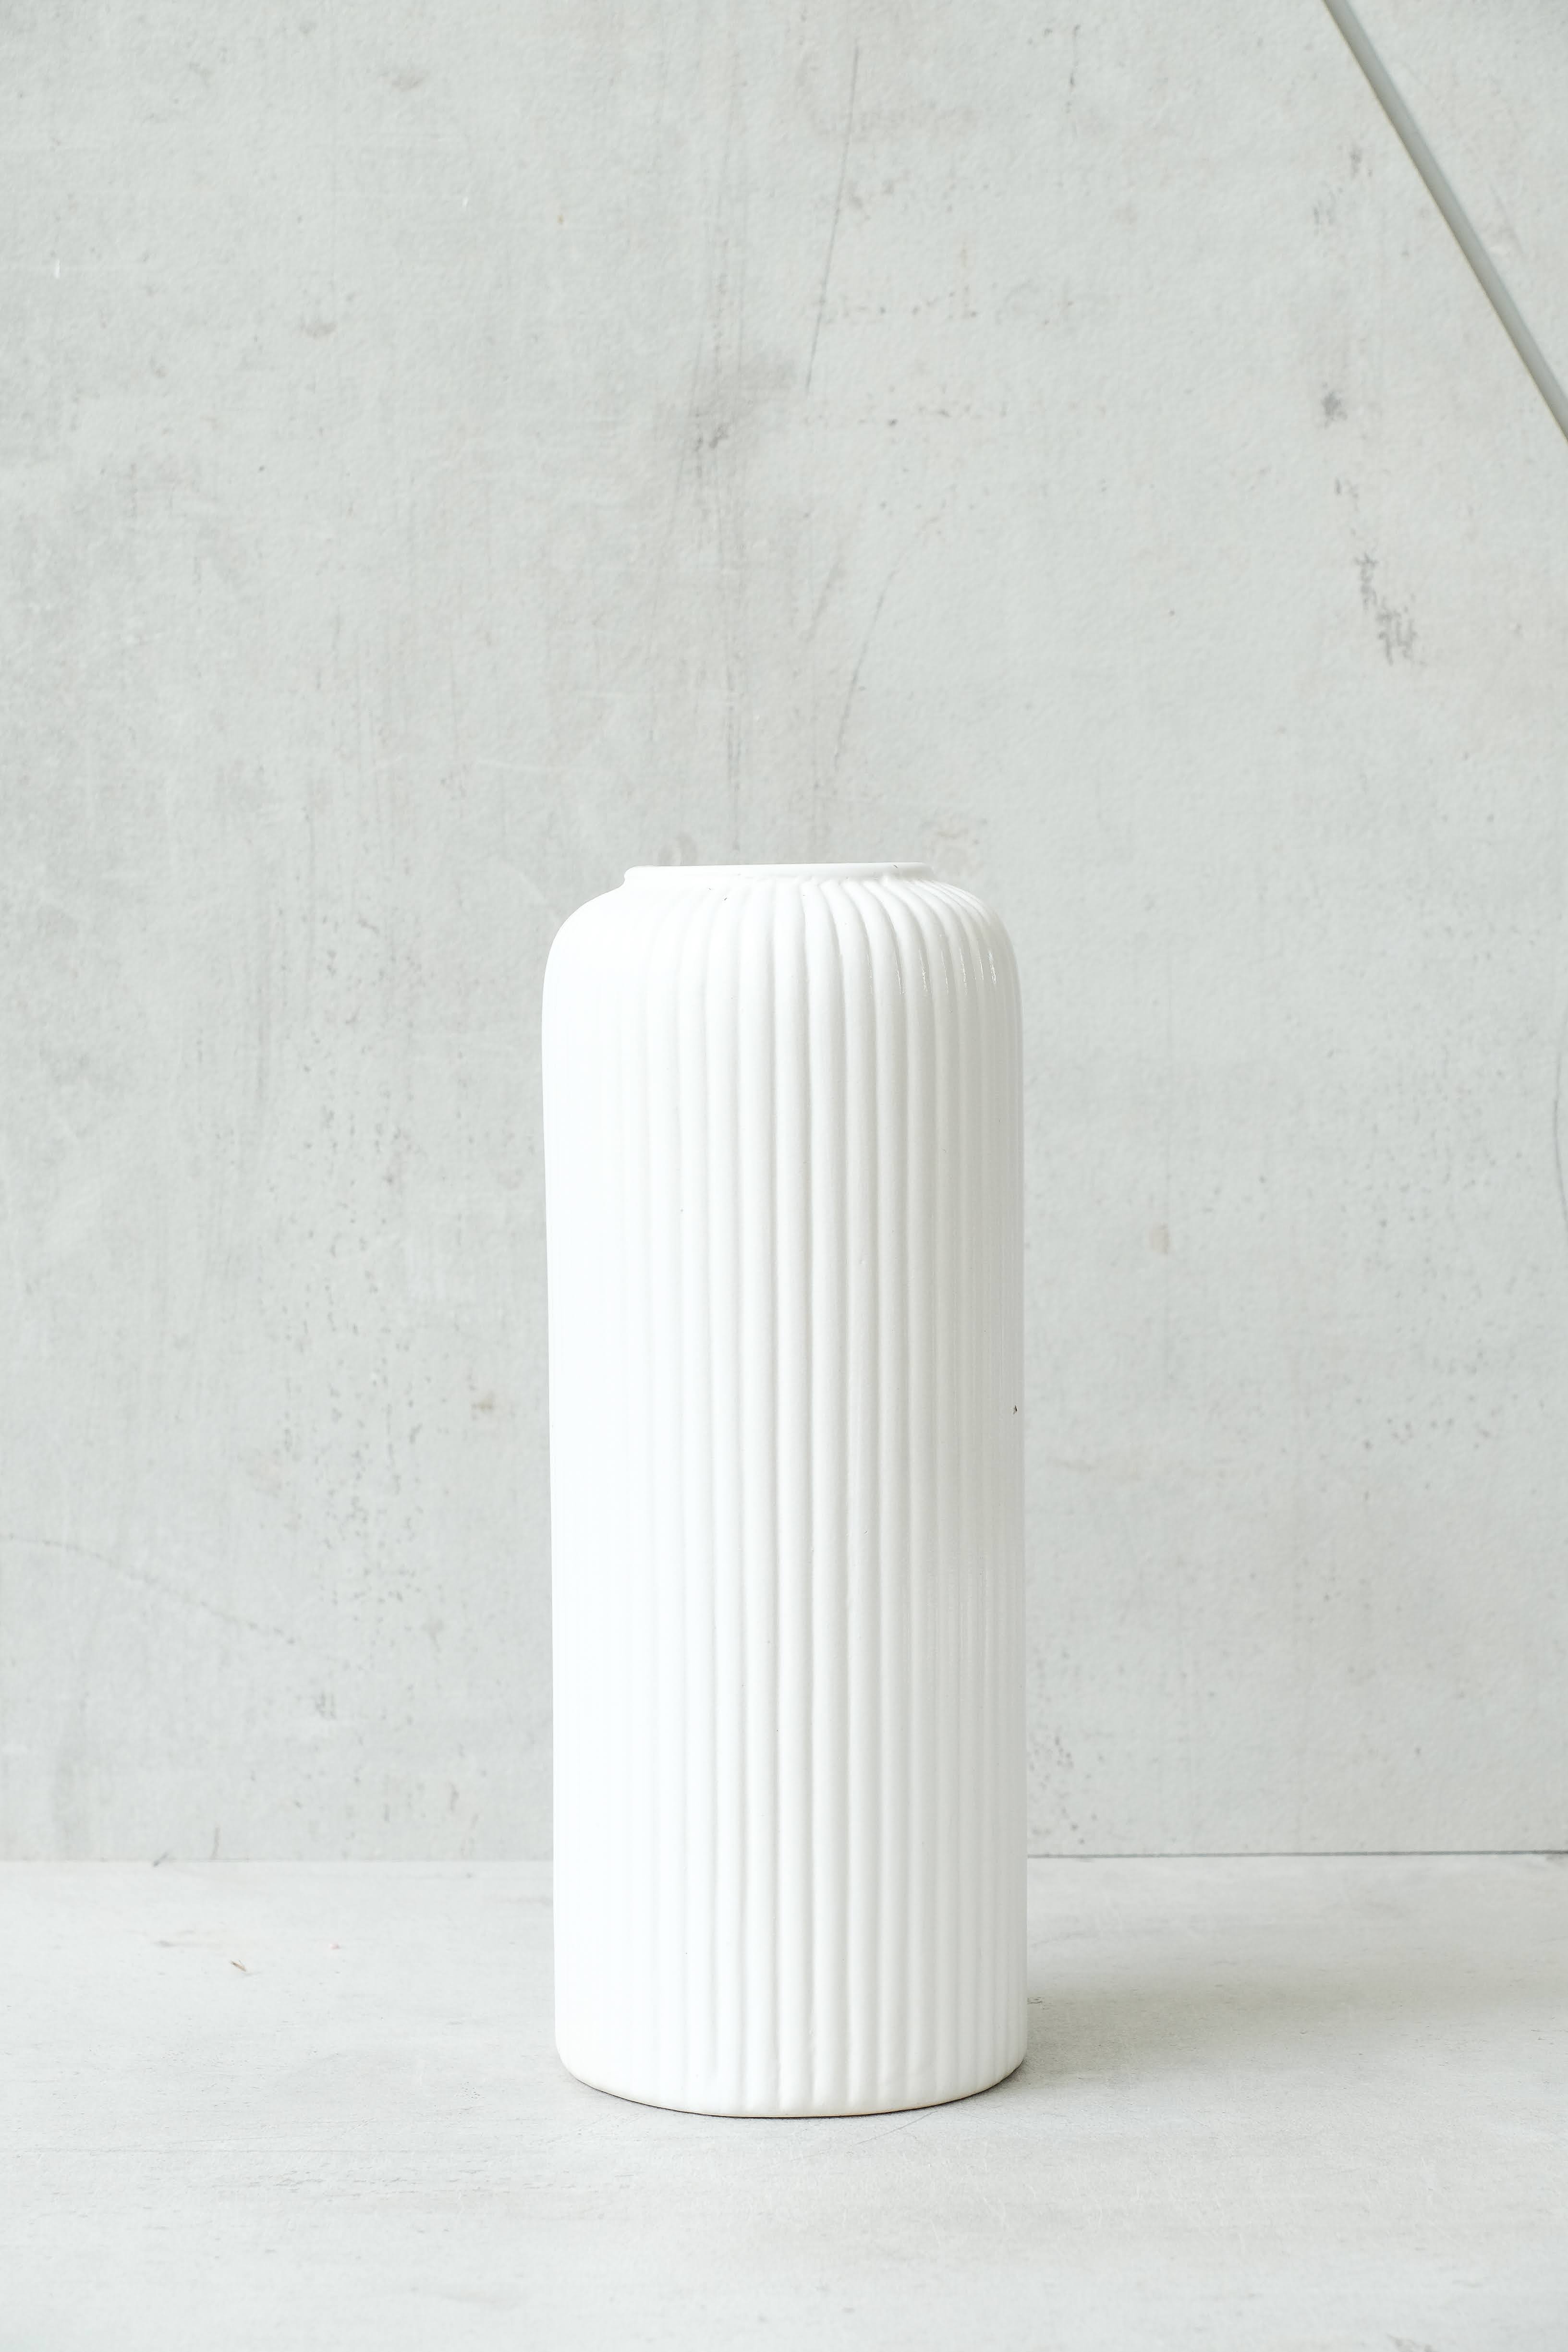 Shell Ribbed White Vase (Large)